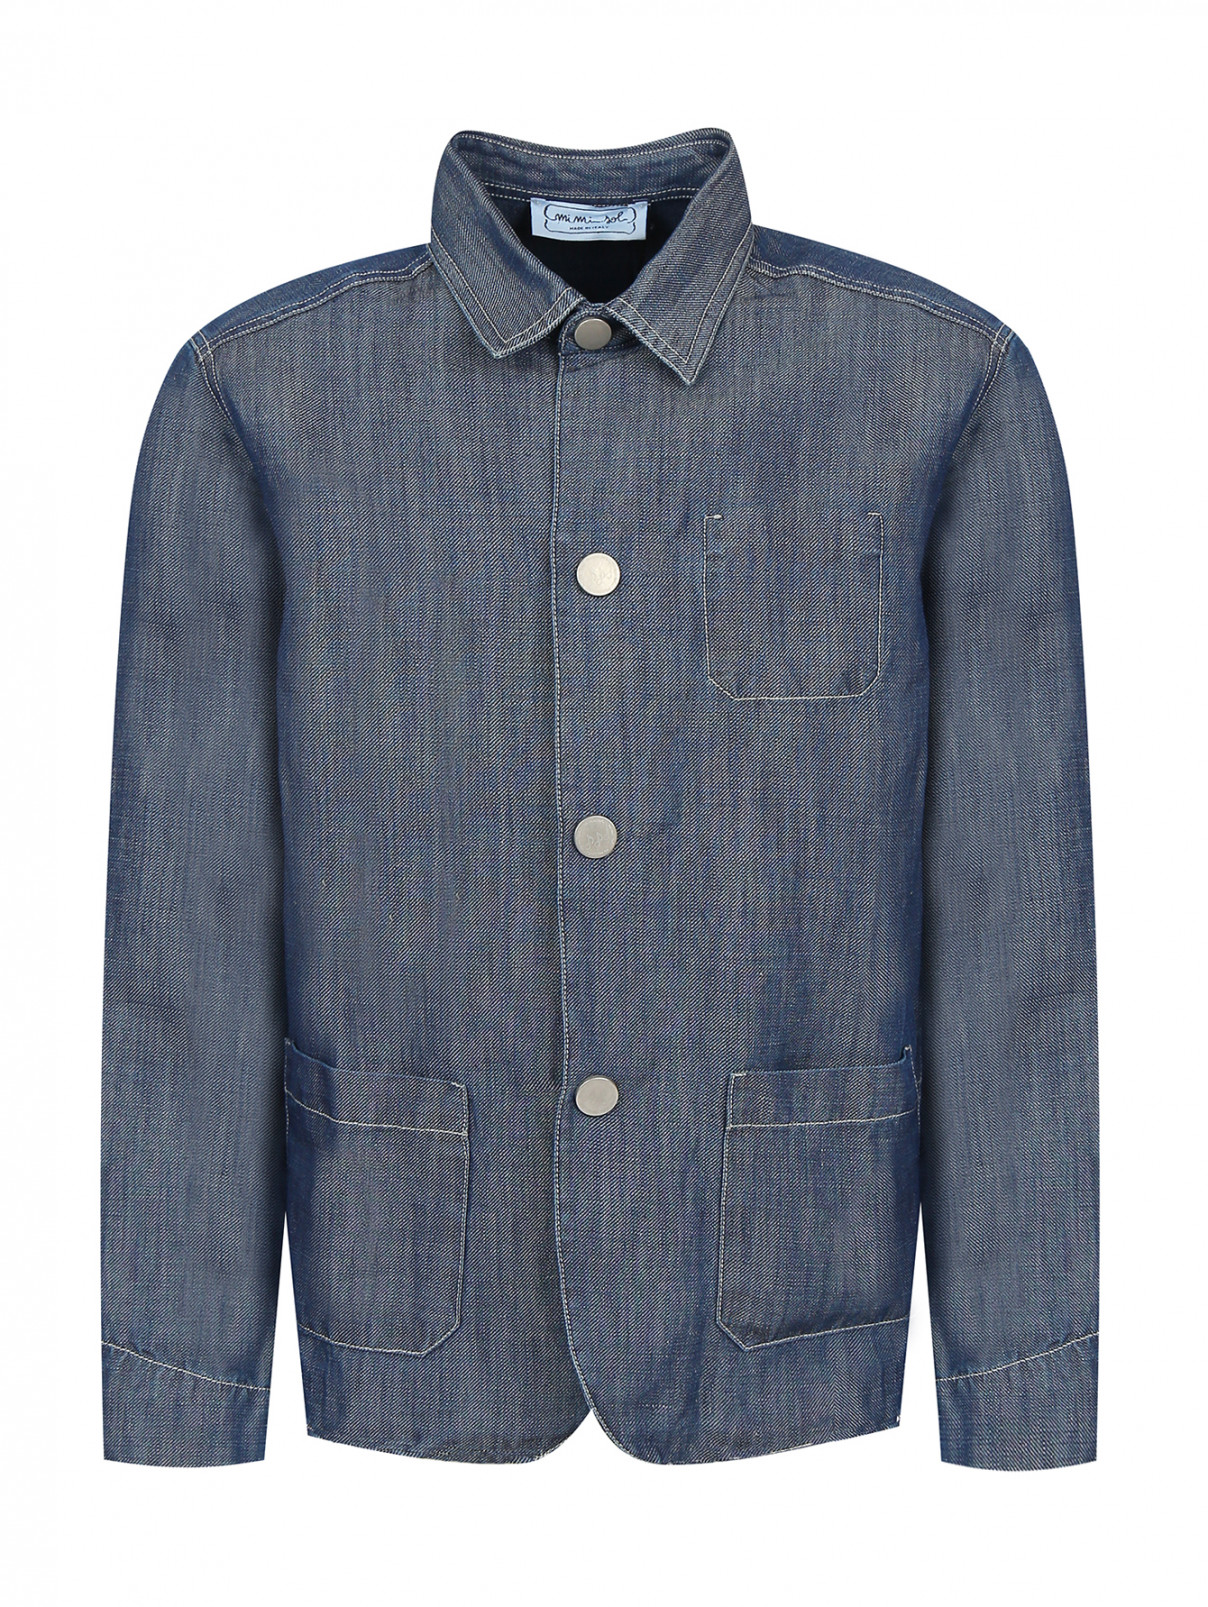 Пиджак из хлопка и льна с накладными карманами MiMiSol  –  Общий вид  – Цвет:  Синий